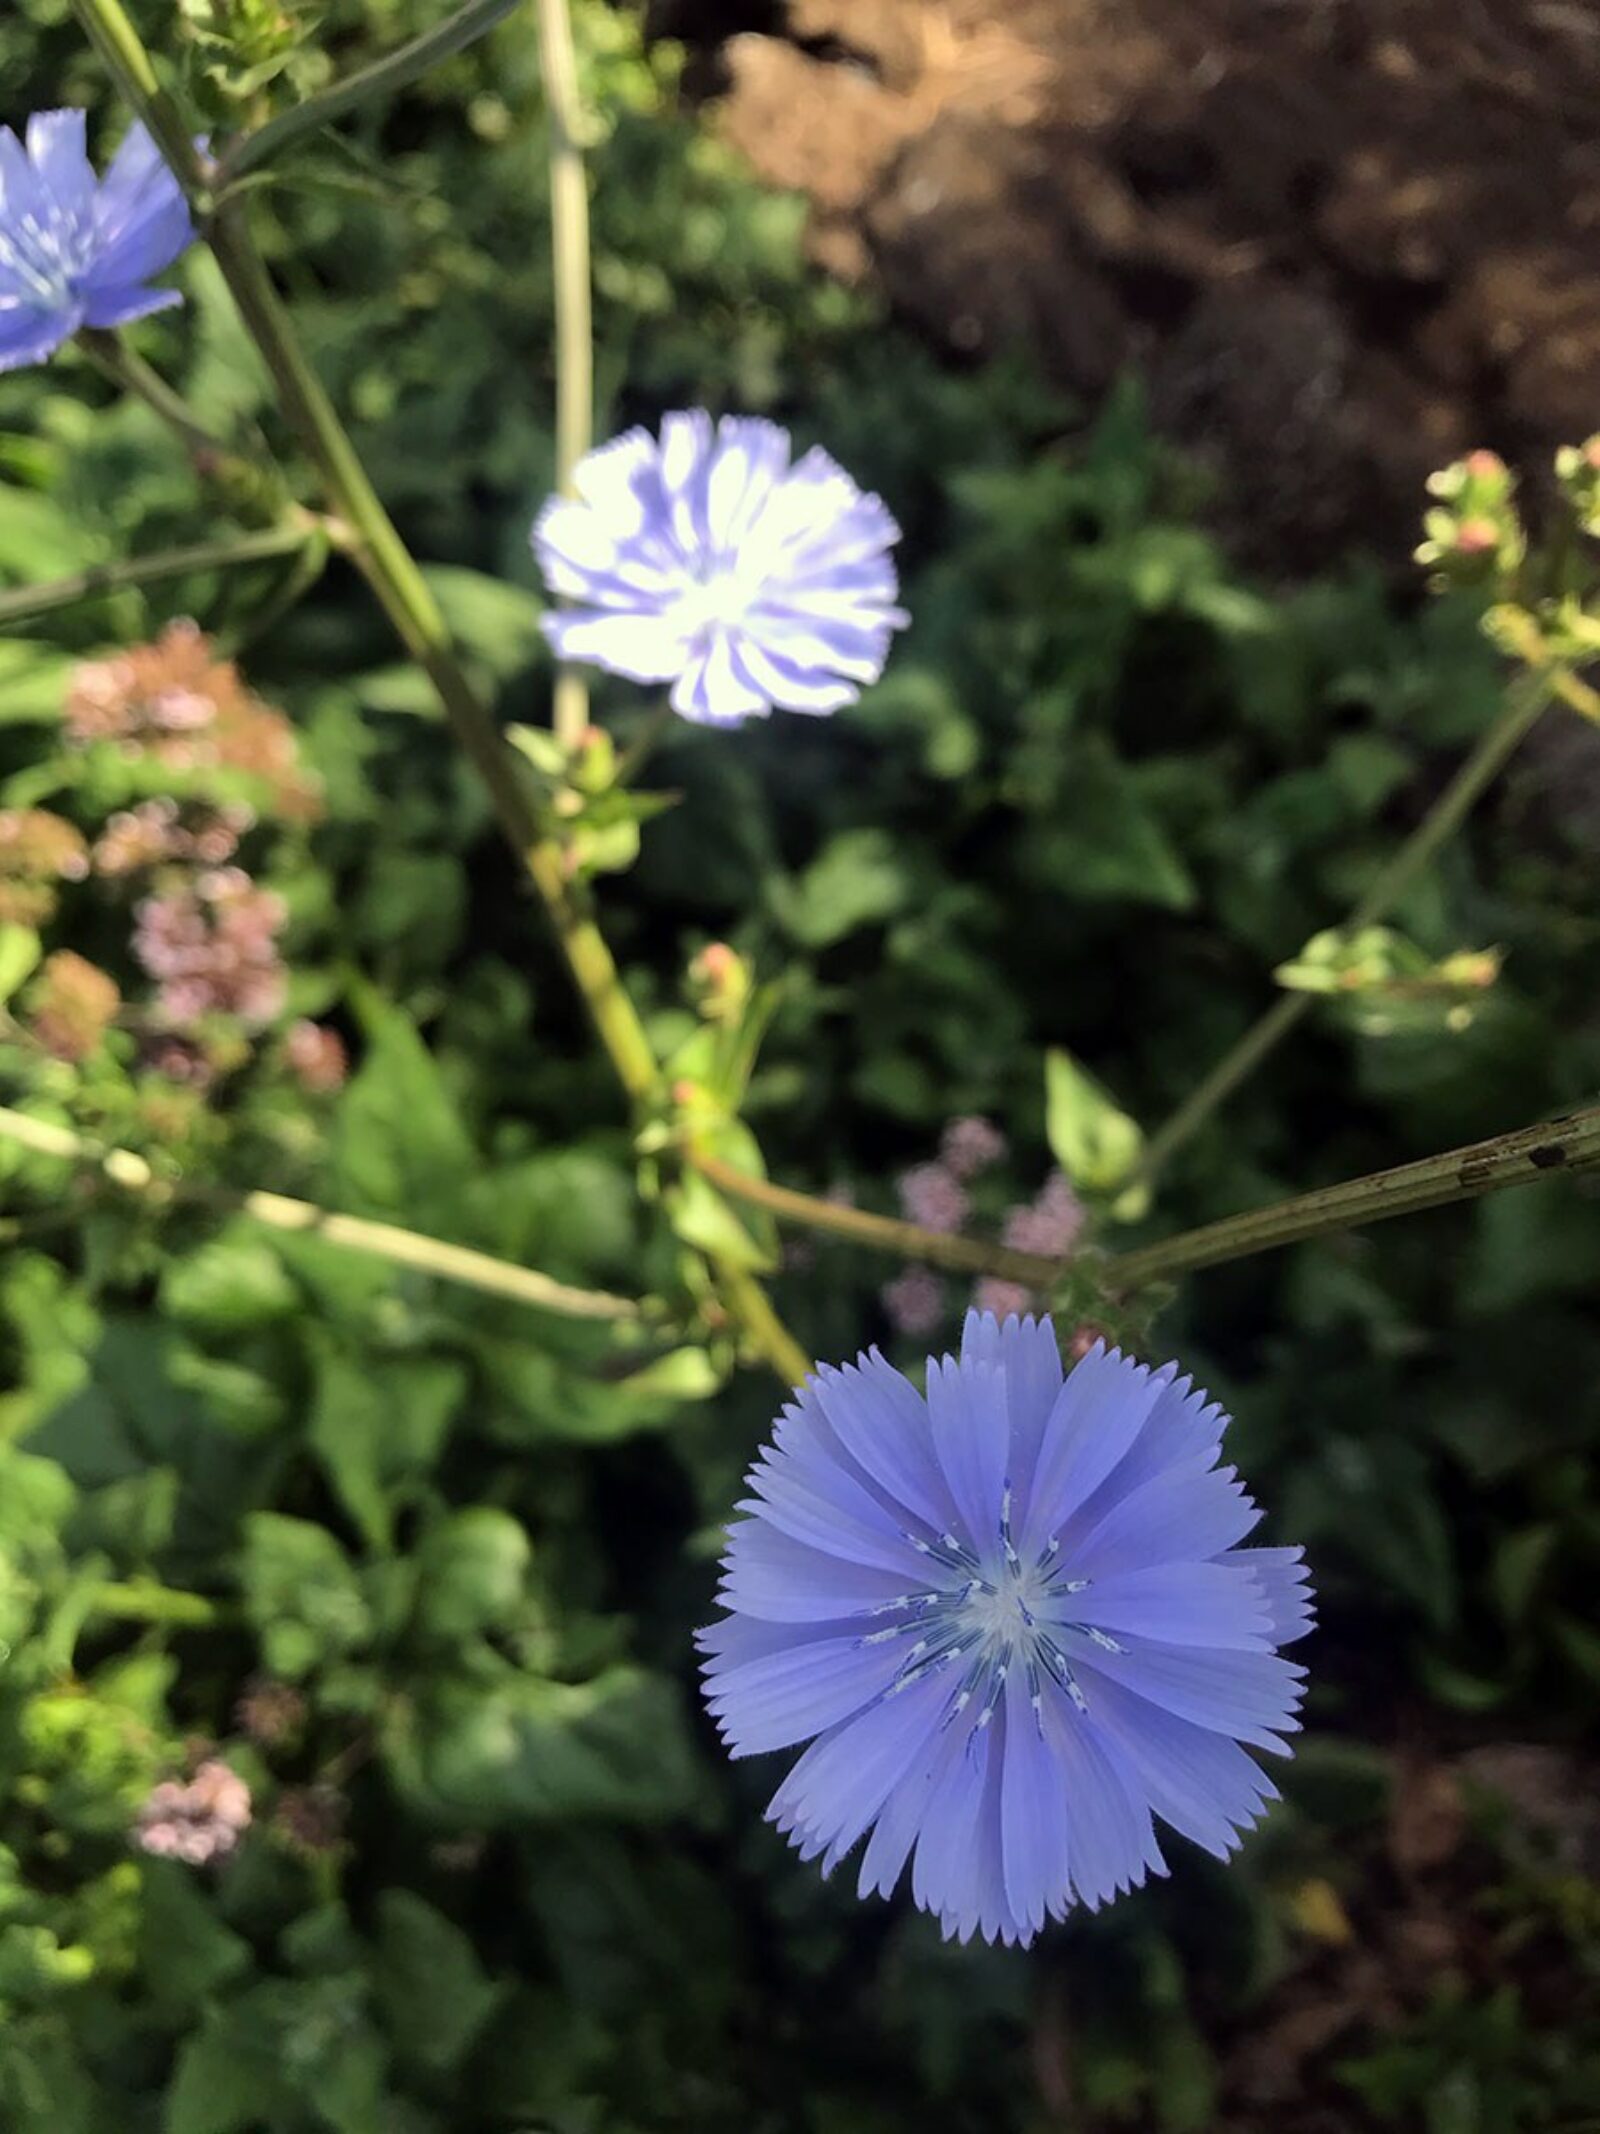 Chicory flower in garden auckland